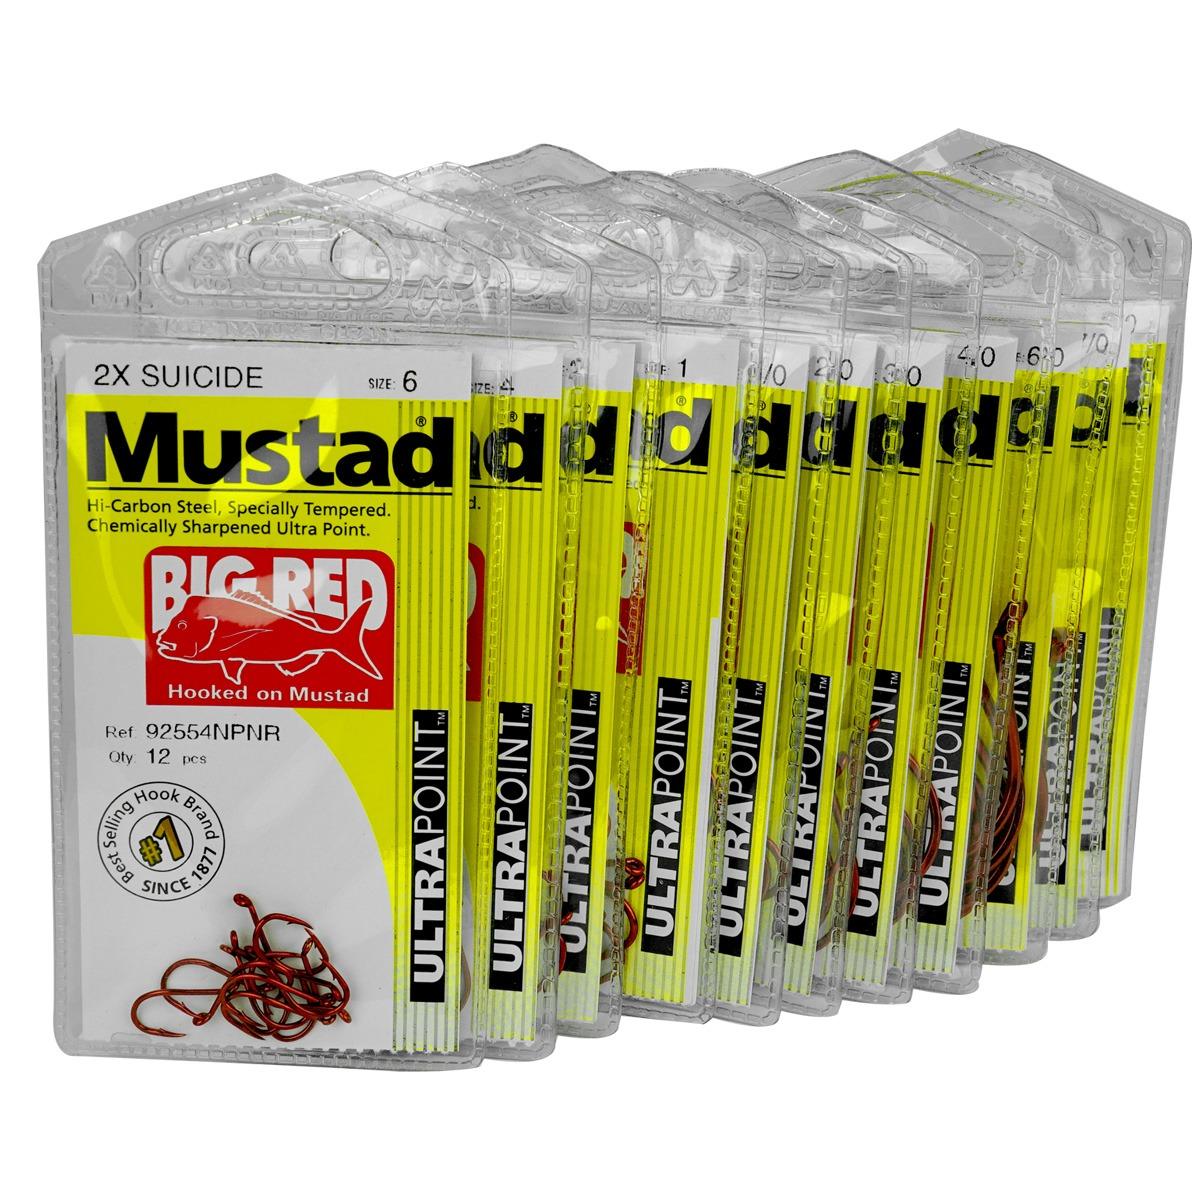 Buy Mustad Accessories Online